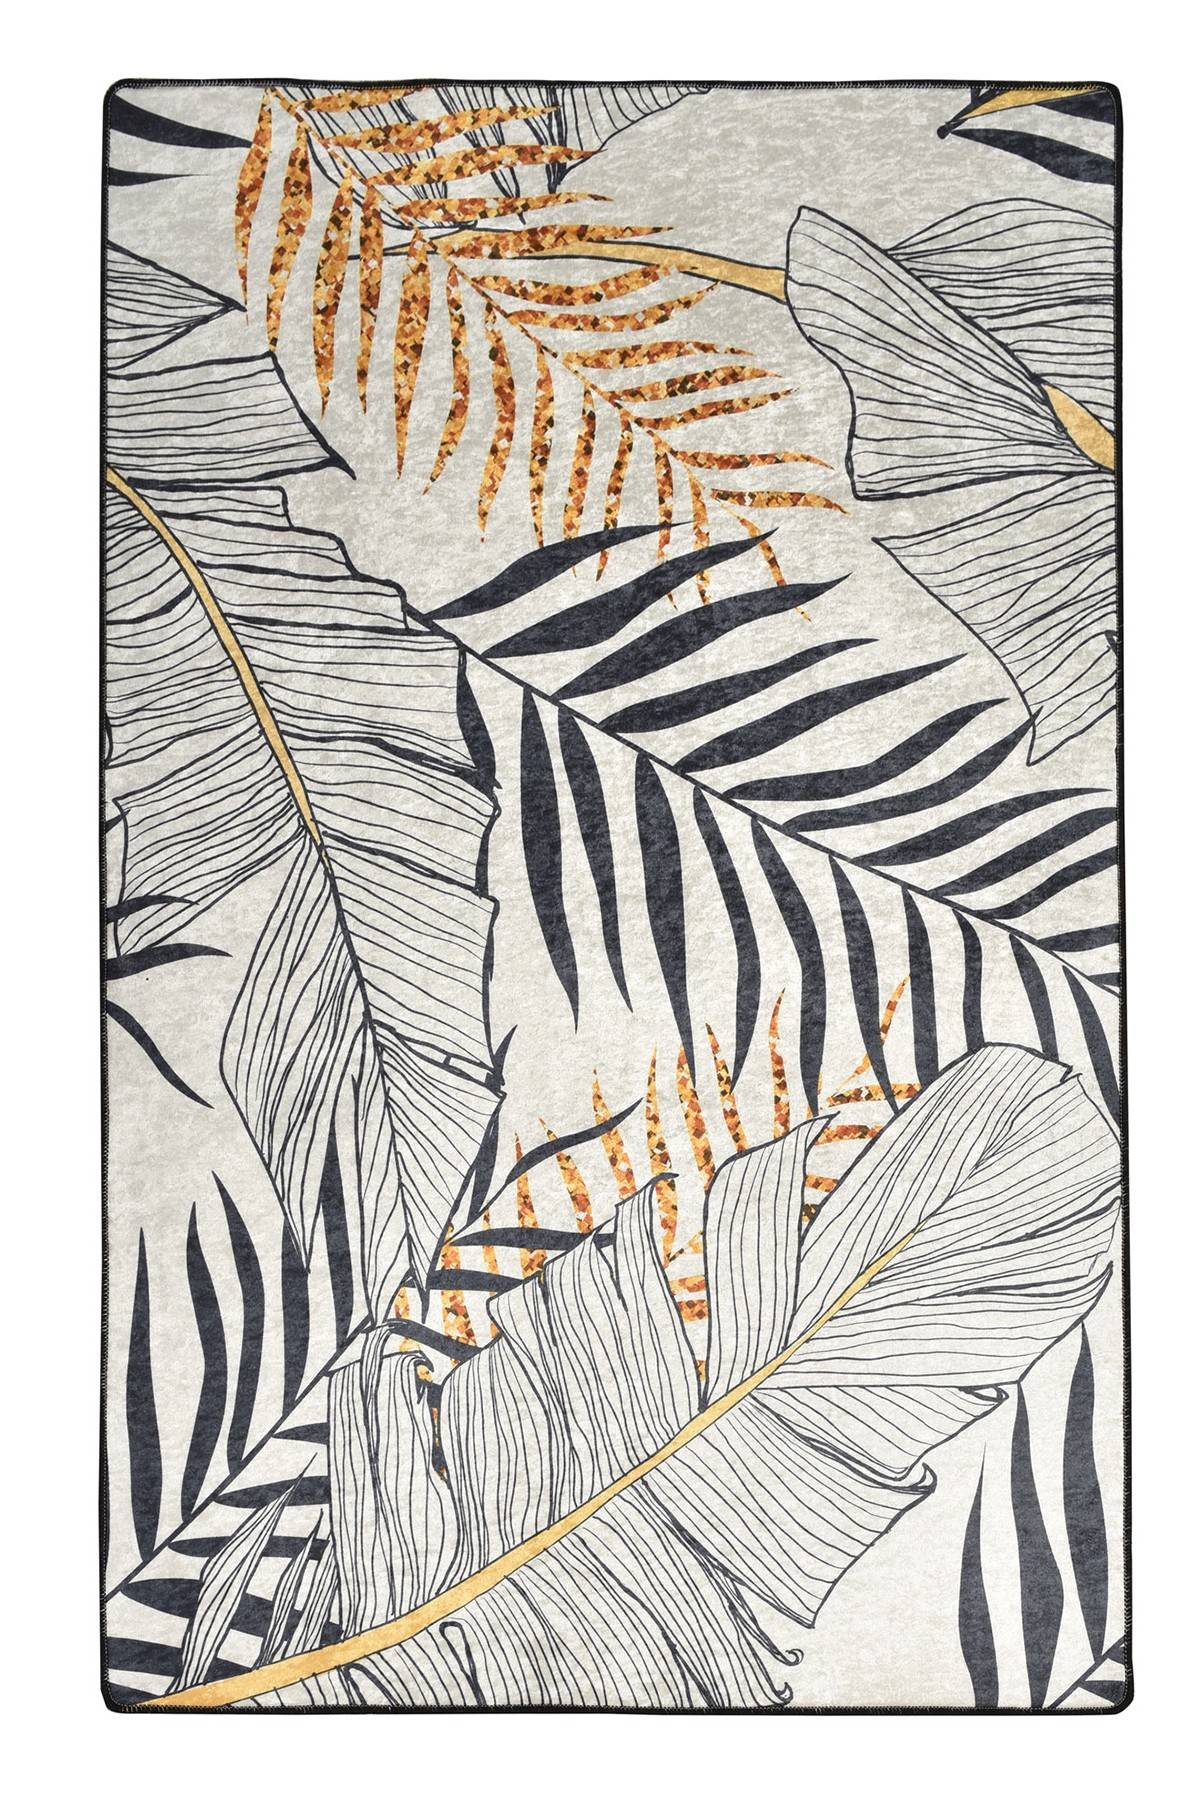 Maiko Teppich 80x300cm Blättermuster Grau, Schwarz und Gelb